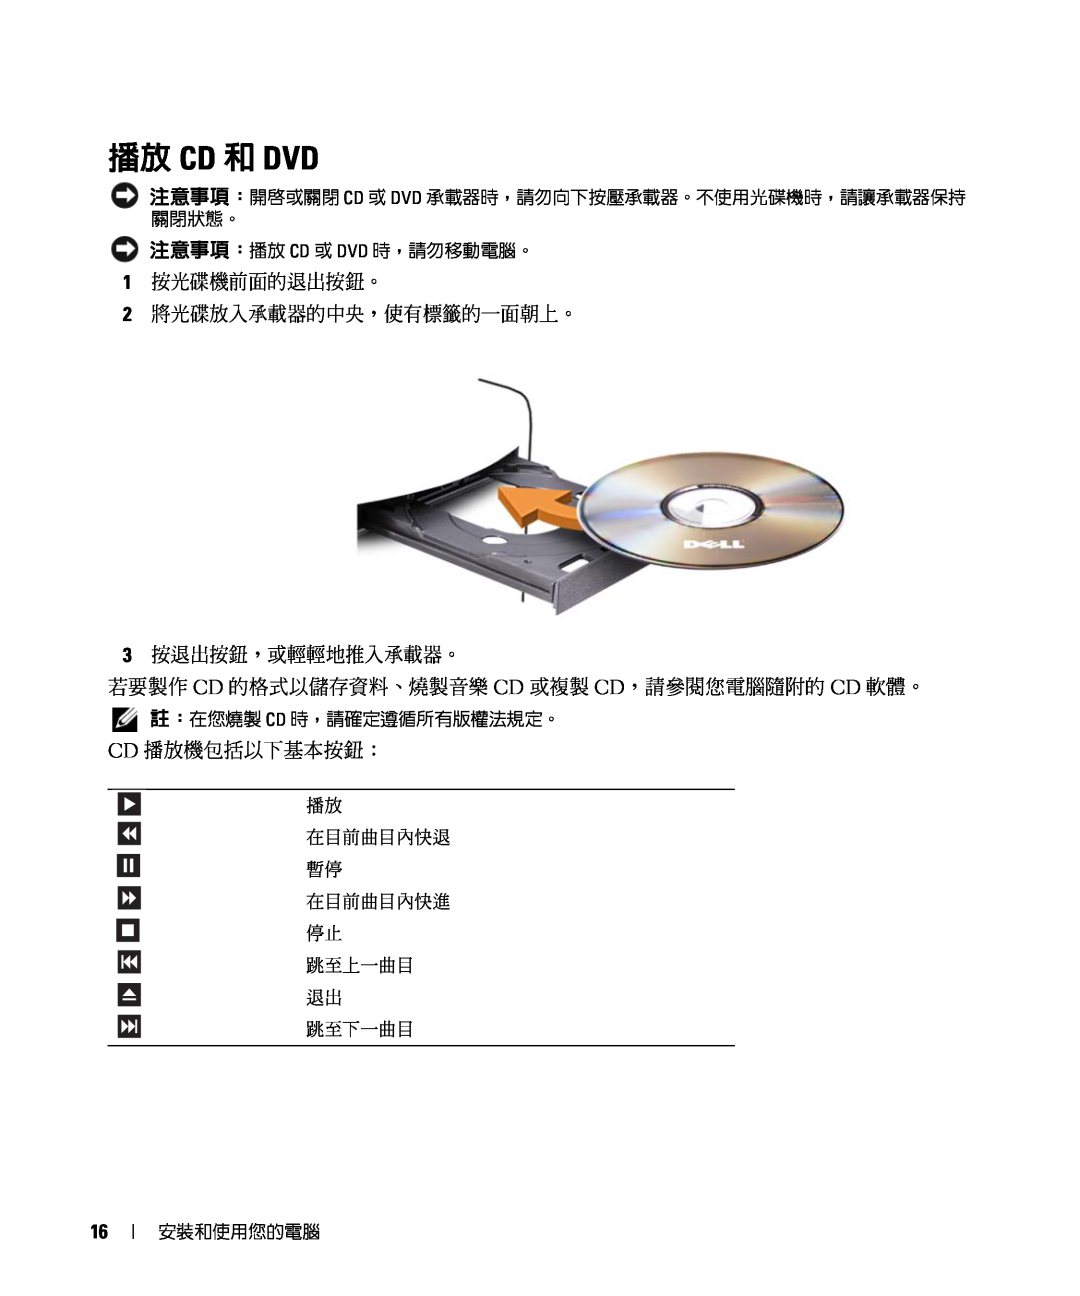 Dell E520 manual 播放 Cd 和 Dvd, 1 按光碟機前面的退出按鈕。 2 將光碟放入承載器的中央，使有標籤的一面朝上。 3 按退出按鈕，或輕輕地推入承載器。, Cd 播放機包括以下基本按鈕： 